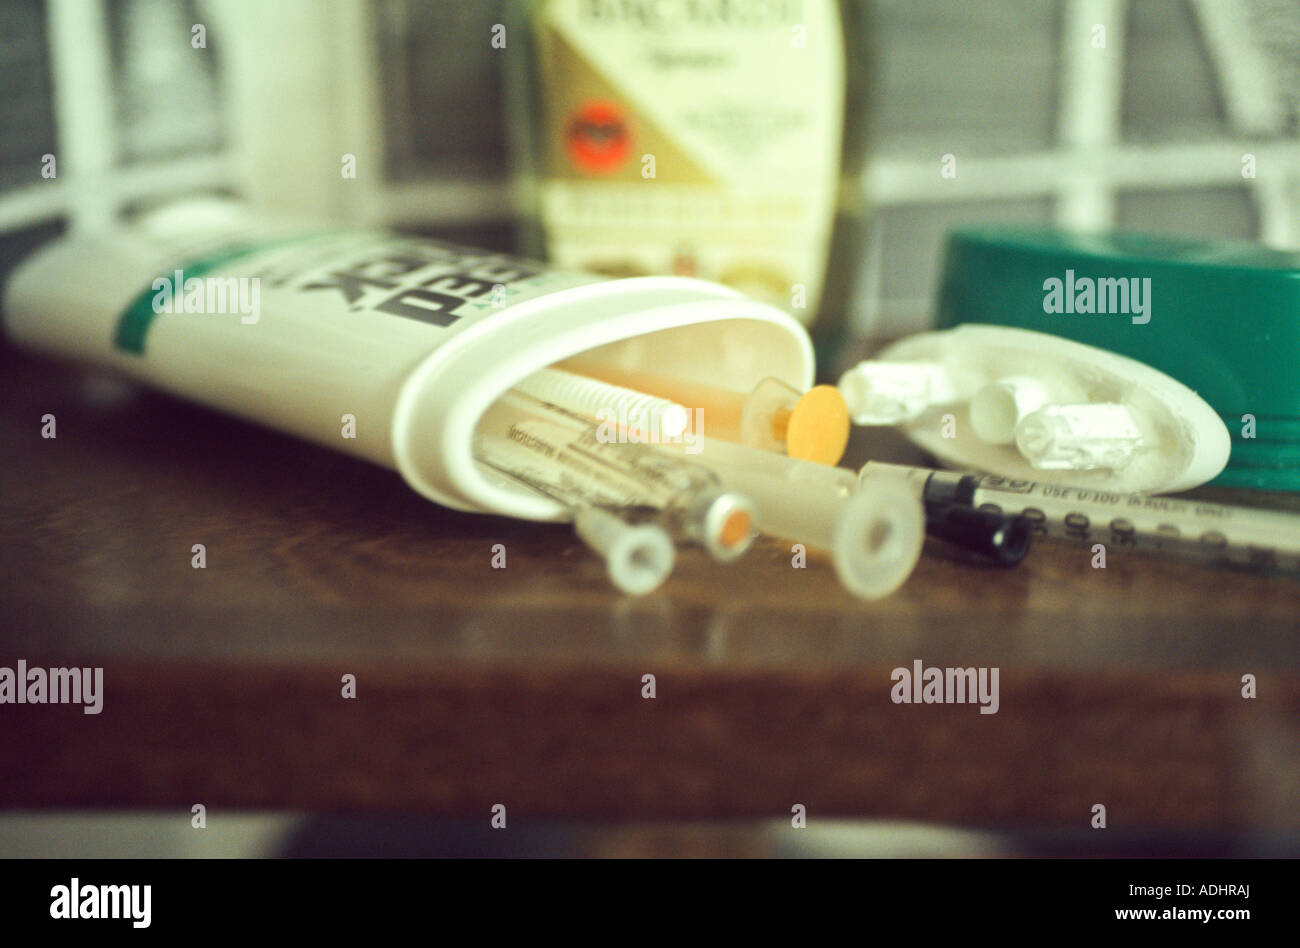 Des seringues et de la drogue cachée à l'intérieur du déodorant bouteille.  Confisqué de détenu. Pénitencier de l'État du Nebraska, aux États-Unis  Photo Stock - Alamy